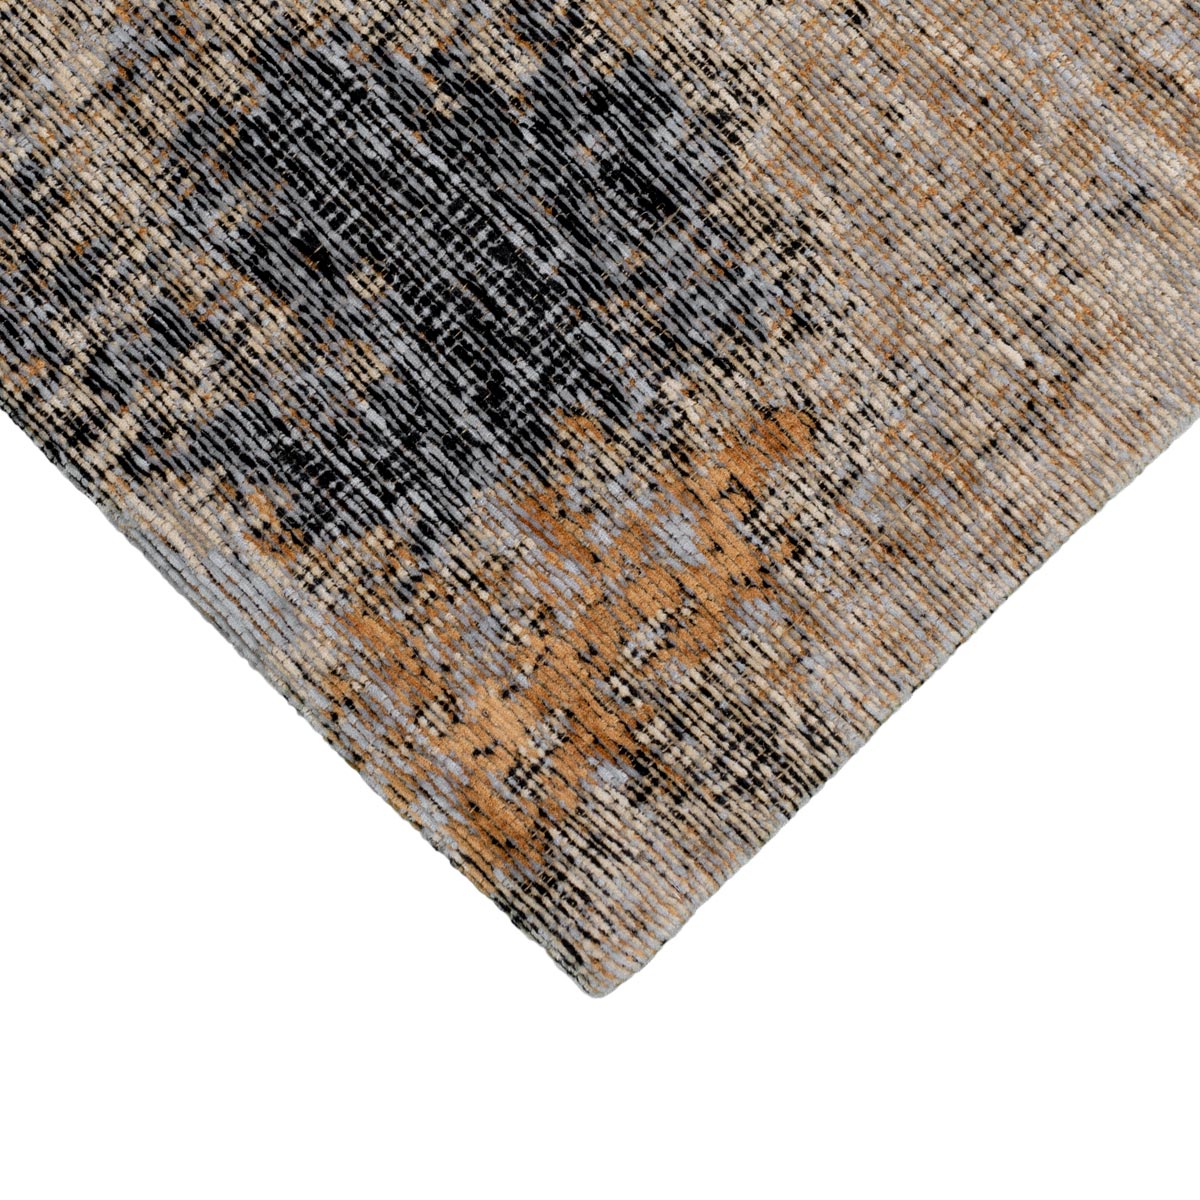 שטיח מרסיי 39 אפור/כתום/כחול | השטיח האדום